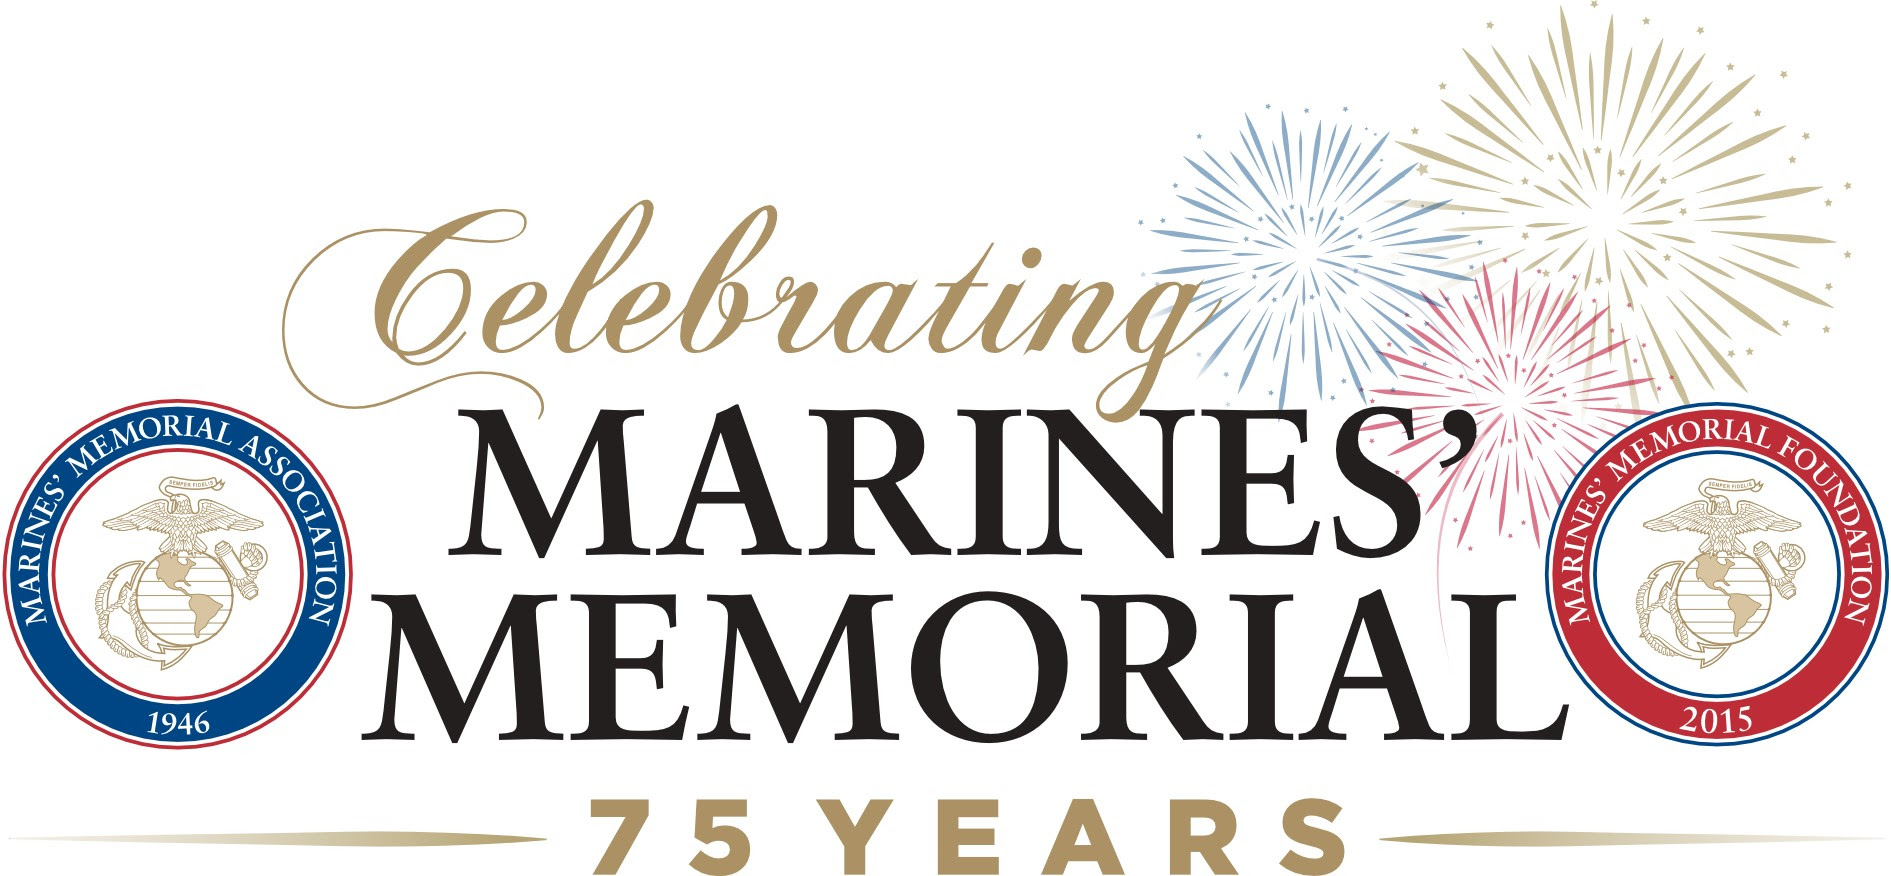 Marines' Memorial: 75 Year Anniversary